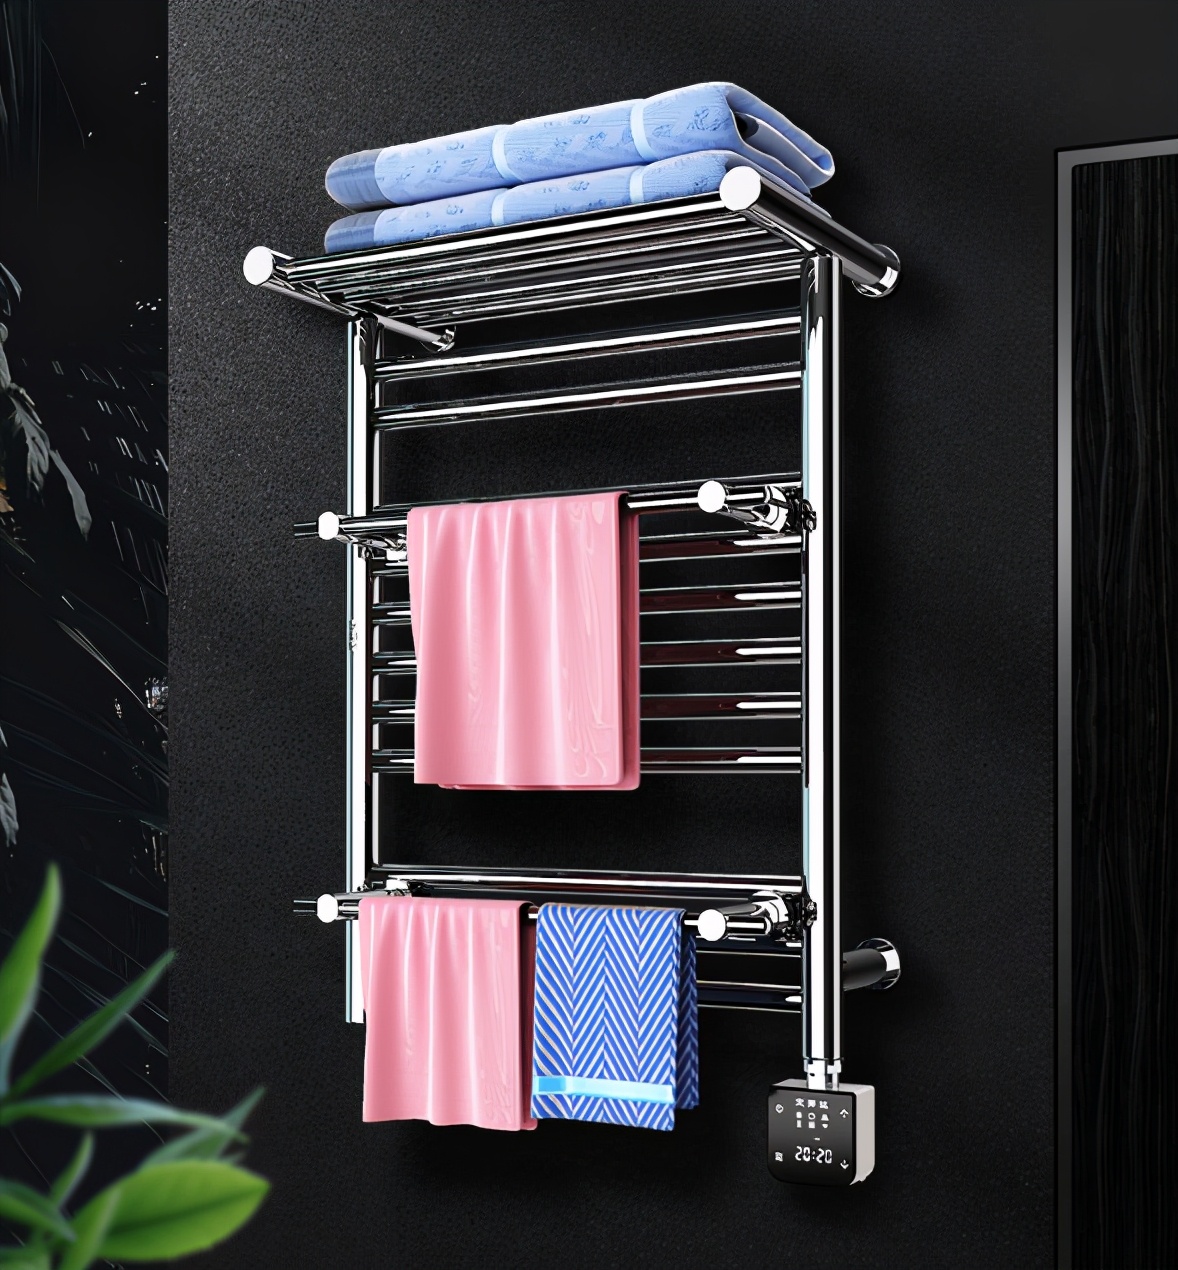 艾芬达智能电热毛巾架 以品质力促卫浴消费升级